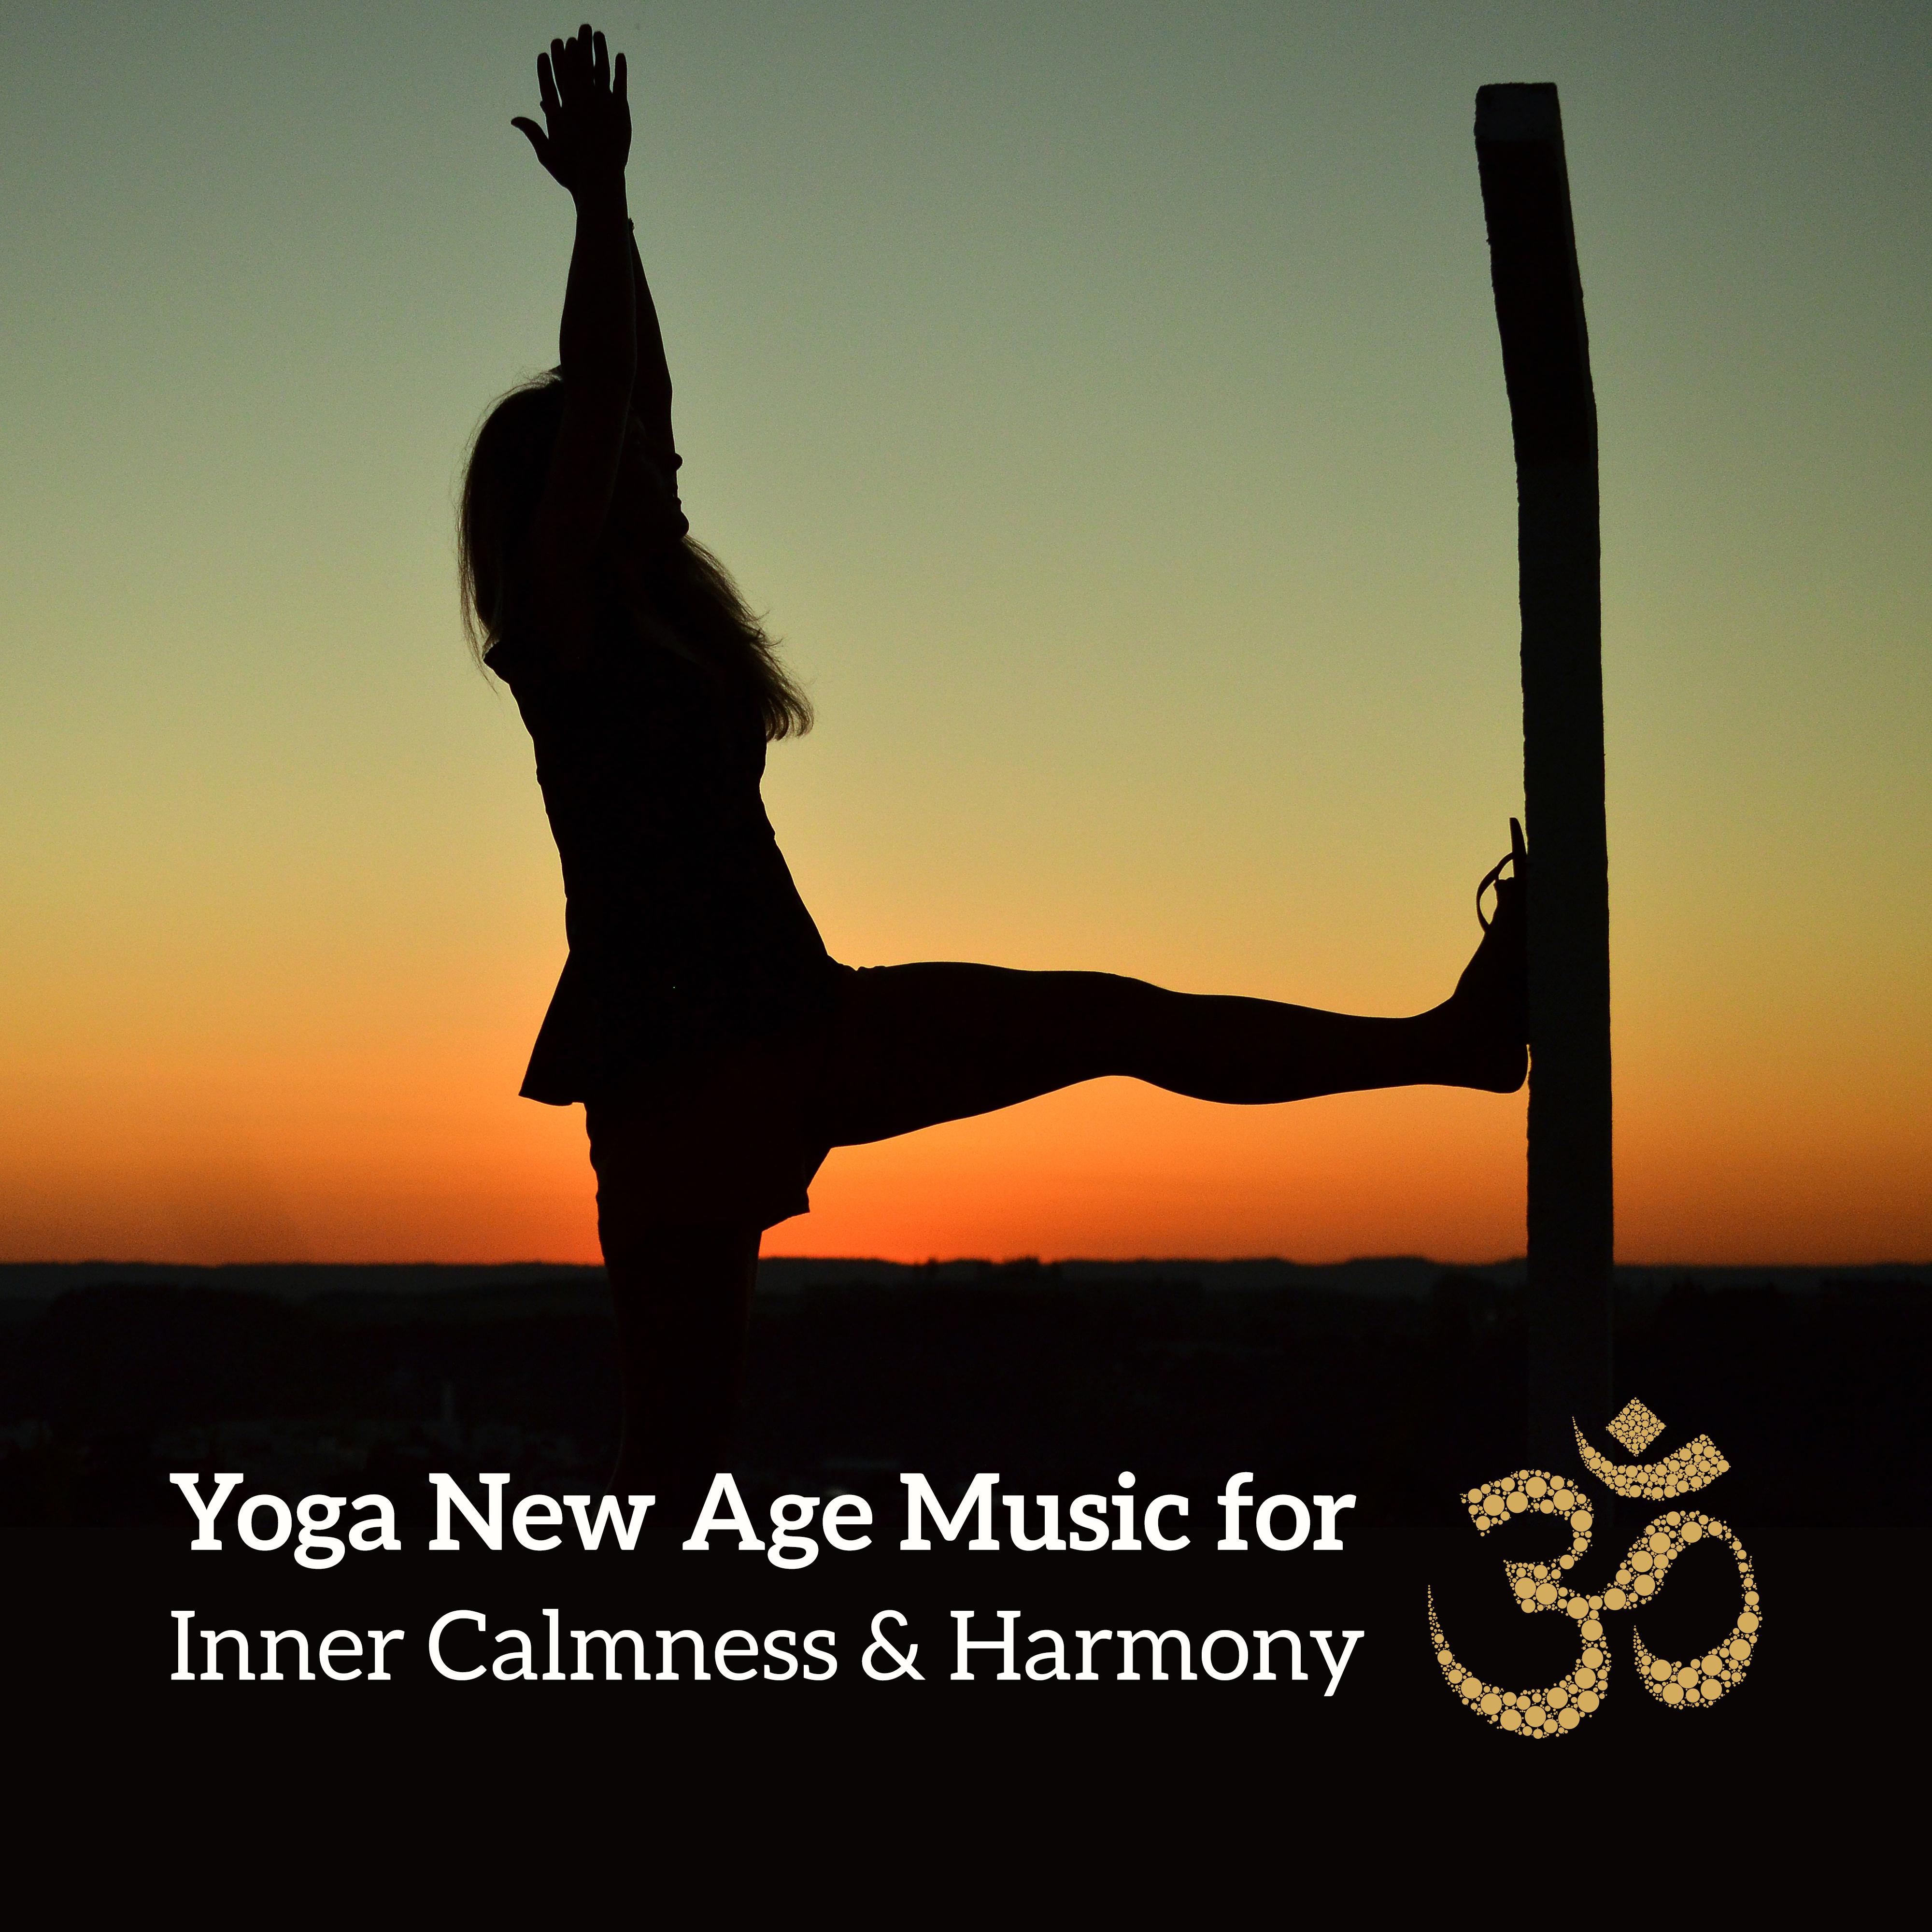 Yoga New Age Music for Inner Calmness & Harmony